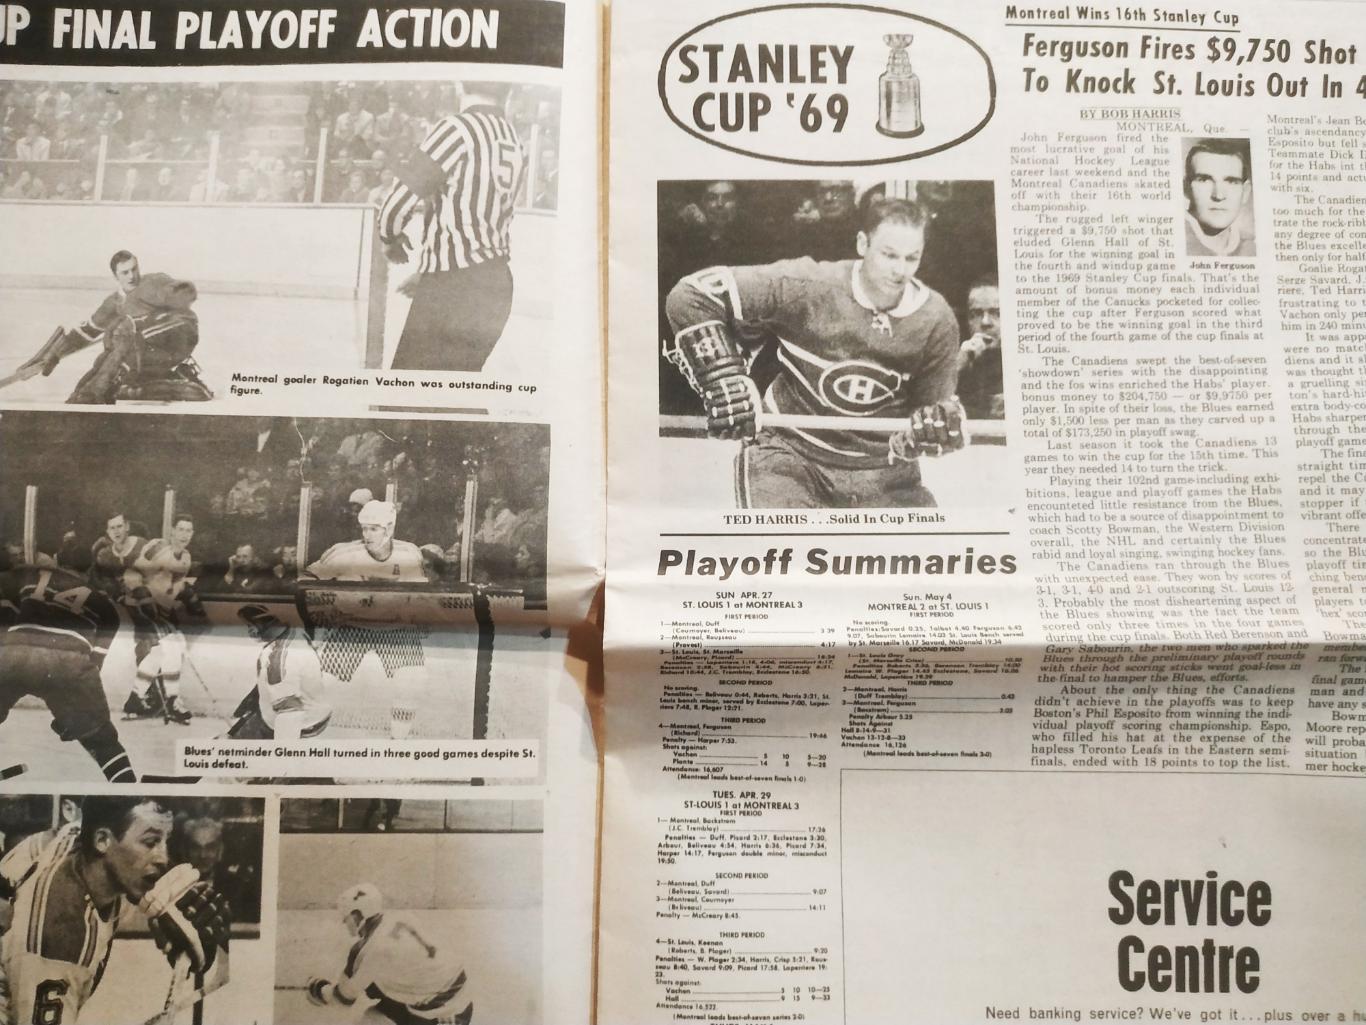 ХОККЕЙ ЖУРНАЛ ЕЖЕНЕДЕЛЬНИК НХЛ НОВОСТИ ХОККЕЯ NHL MAY 10 1969 THE HOCKEY NEWS 1